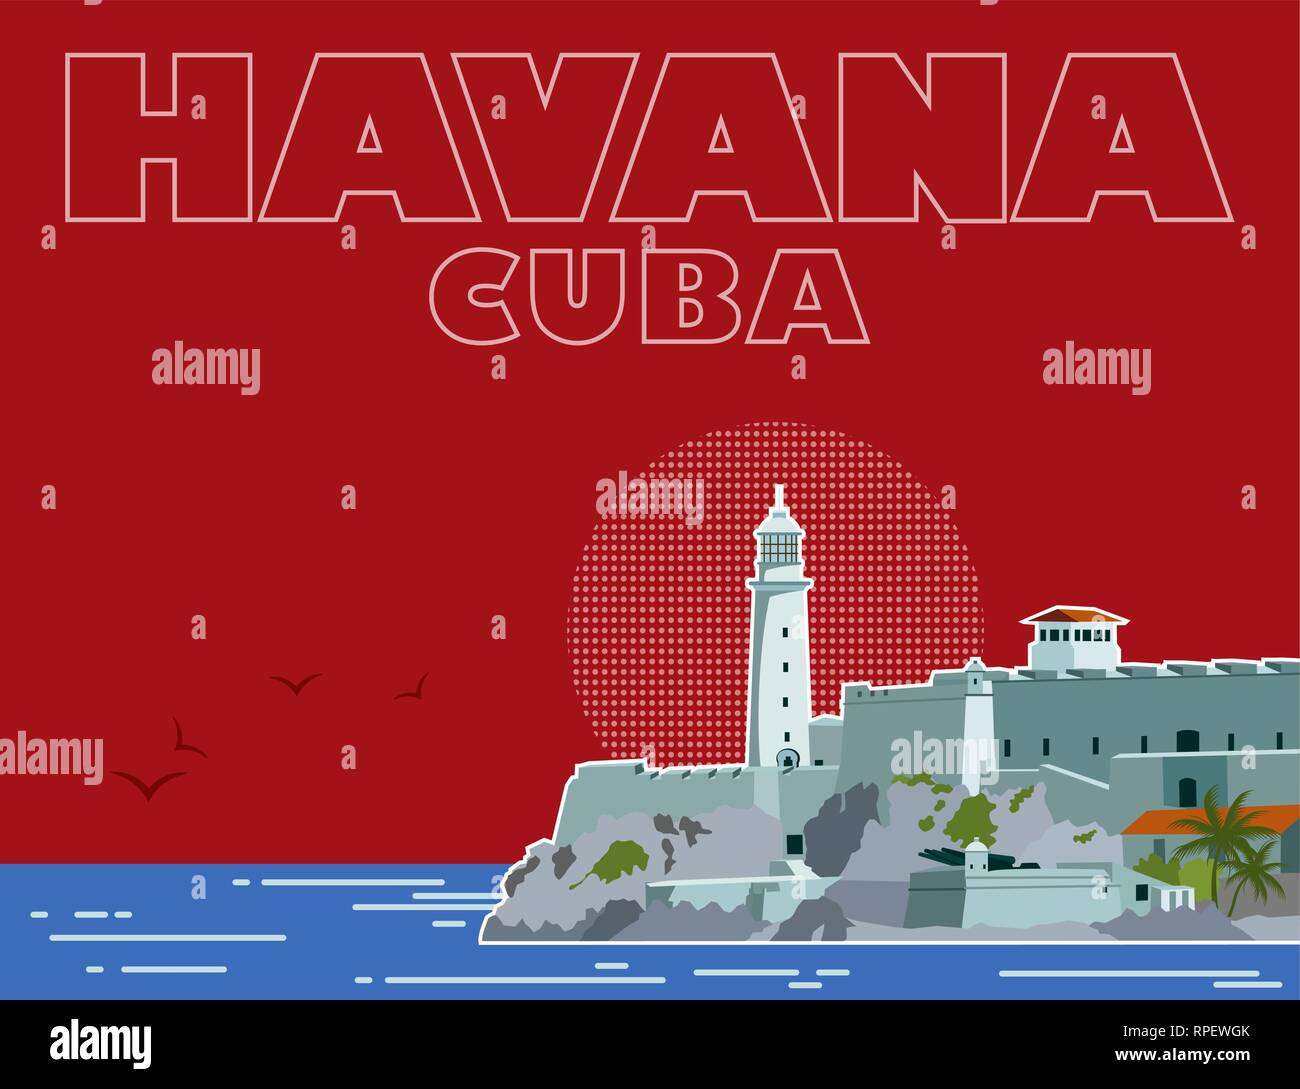 Havana Cuba background Stock Vector